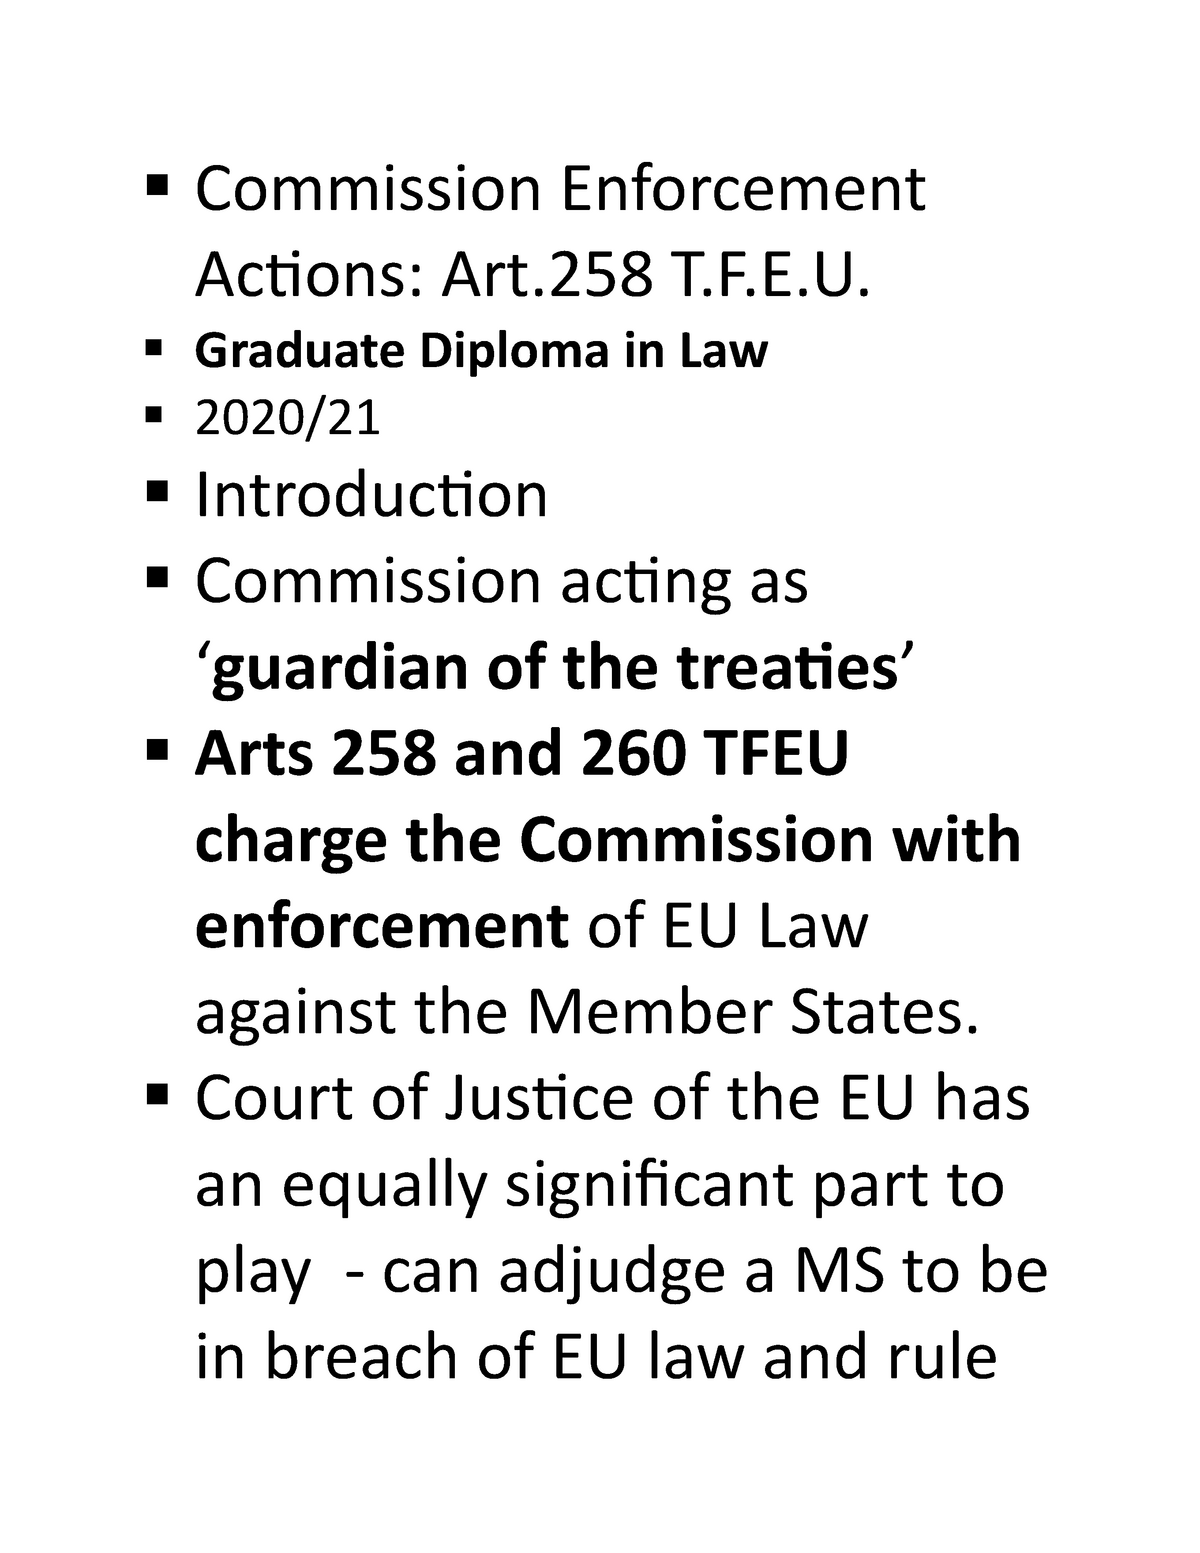 Commission Enforcement Actions Law MMU Studocu